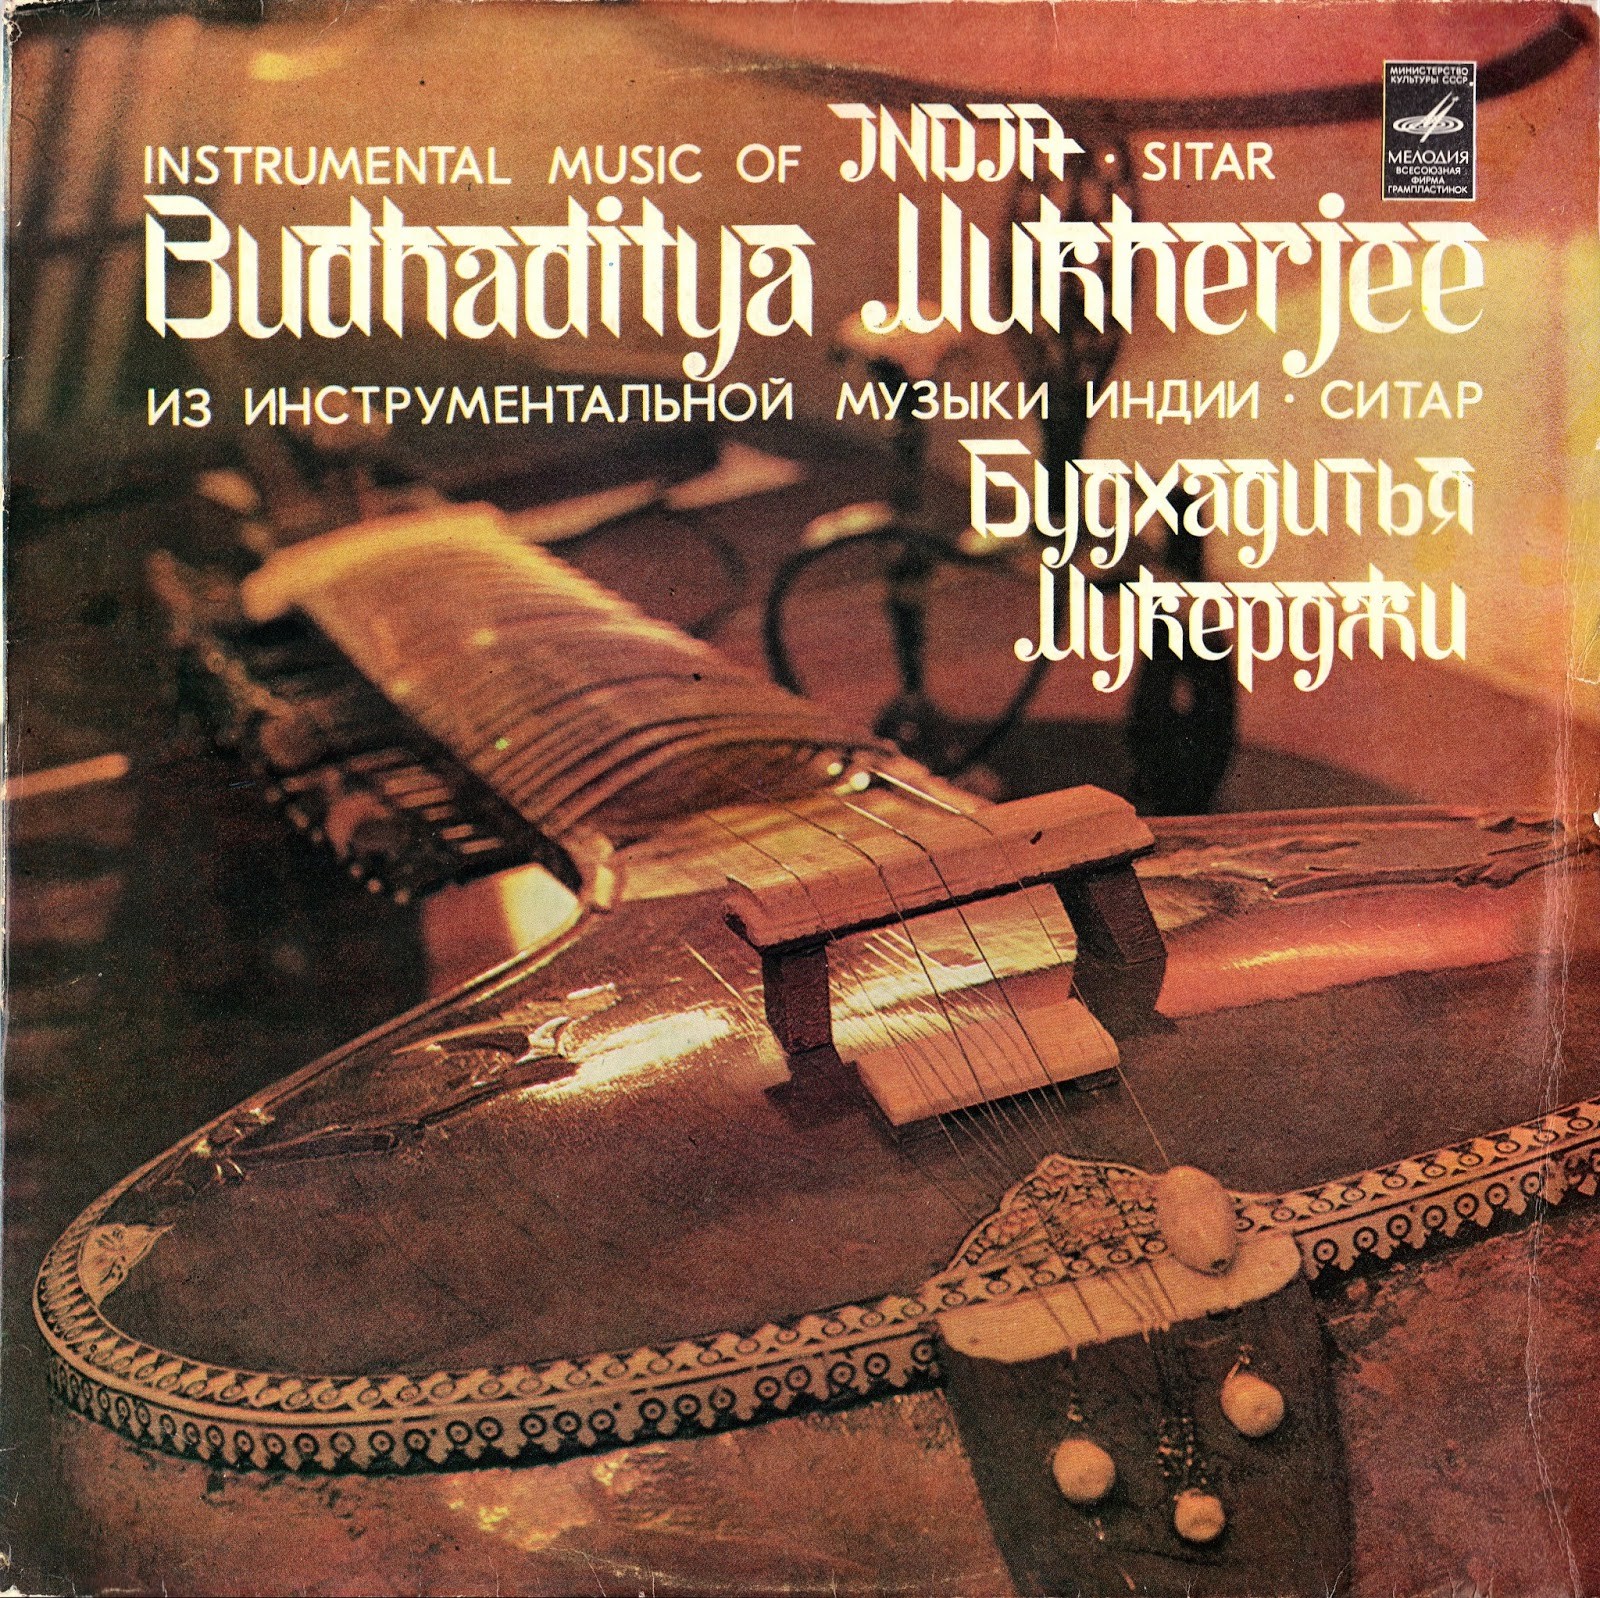 Из инструментальной музыки Индии. Мукерджи Будхадитья (ситар)